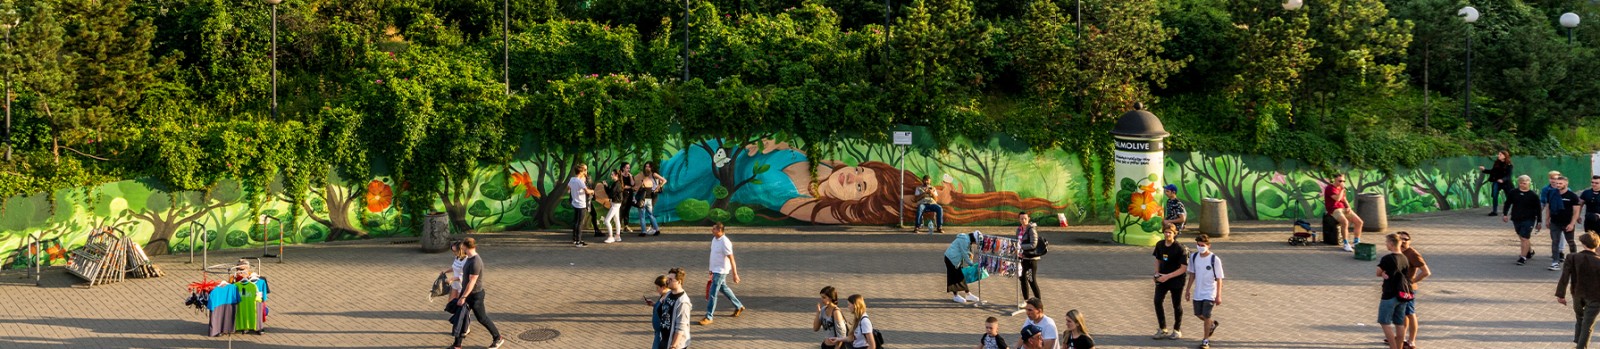 Mural promujący Palmolive w centrum Warszawy | Odrobina natury aby poczuć się w pełni sobą | Portfolio